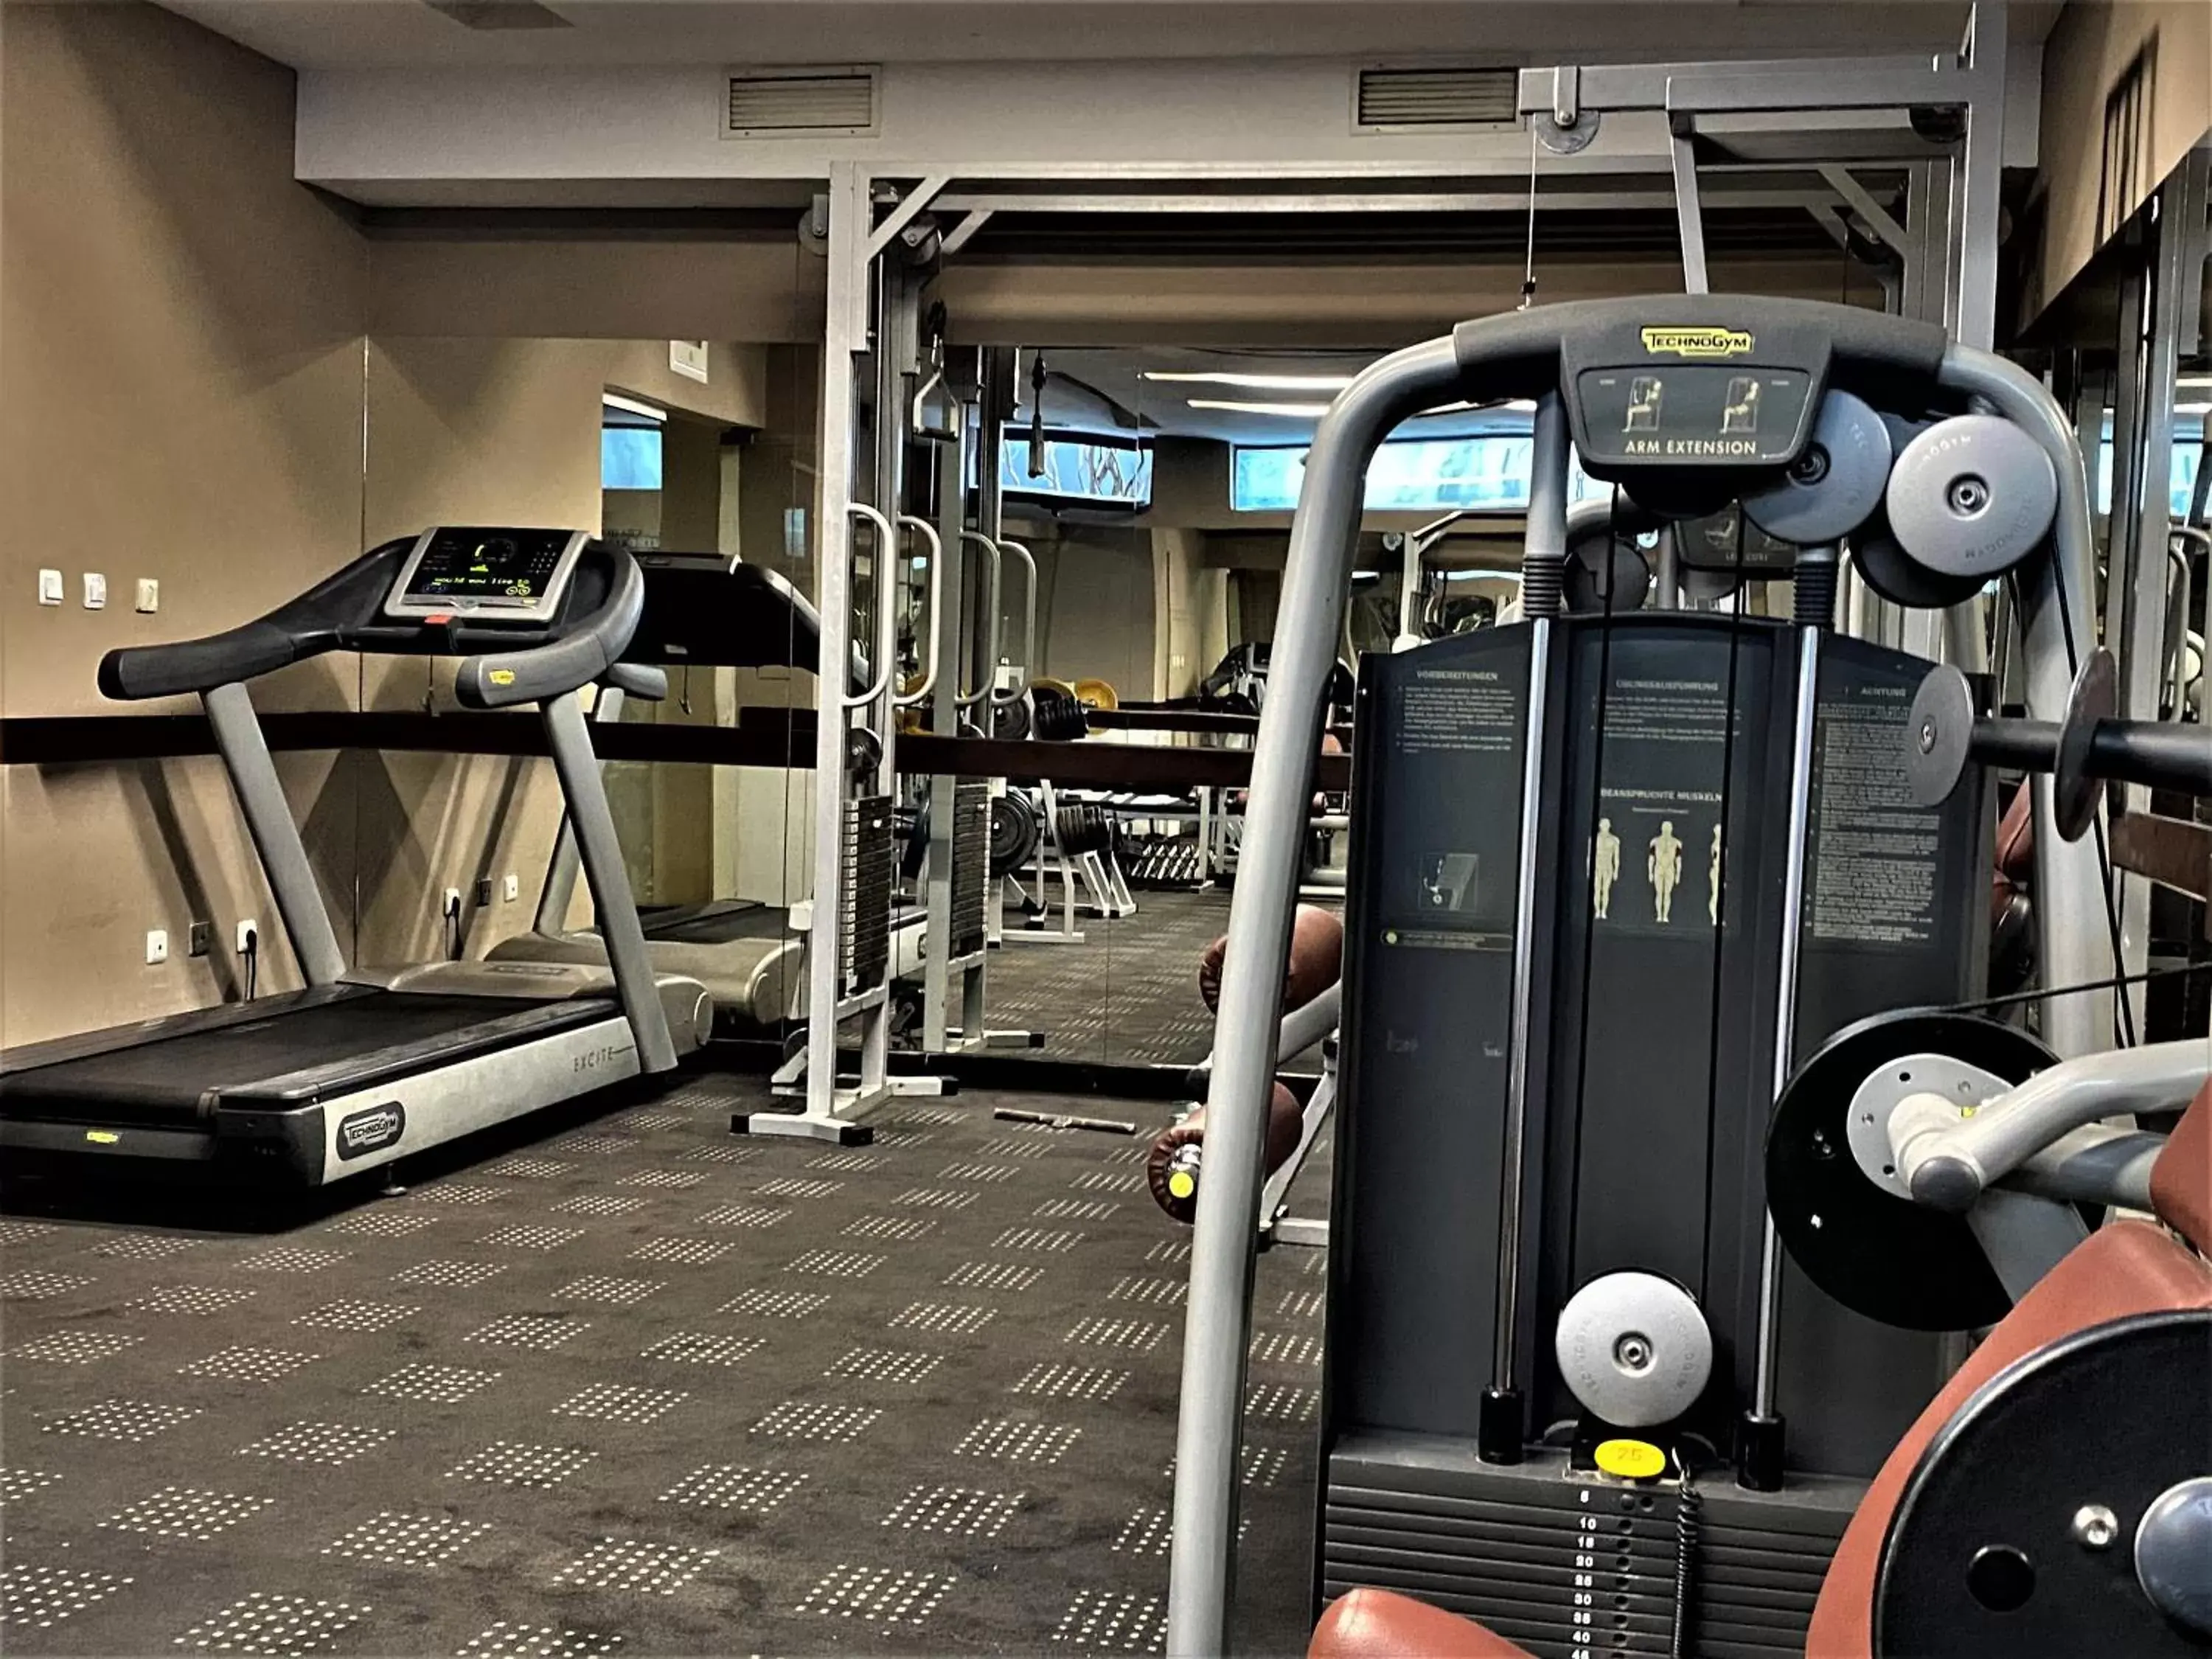 Fitness centre/facilities, Fitness Center/Facilities in Medite Spa Resort and Villas